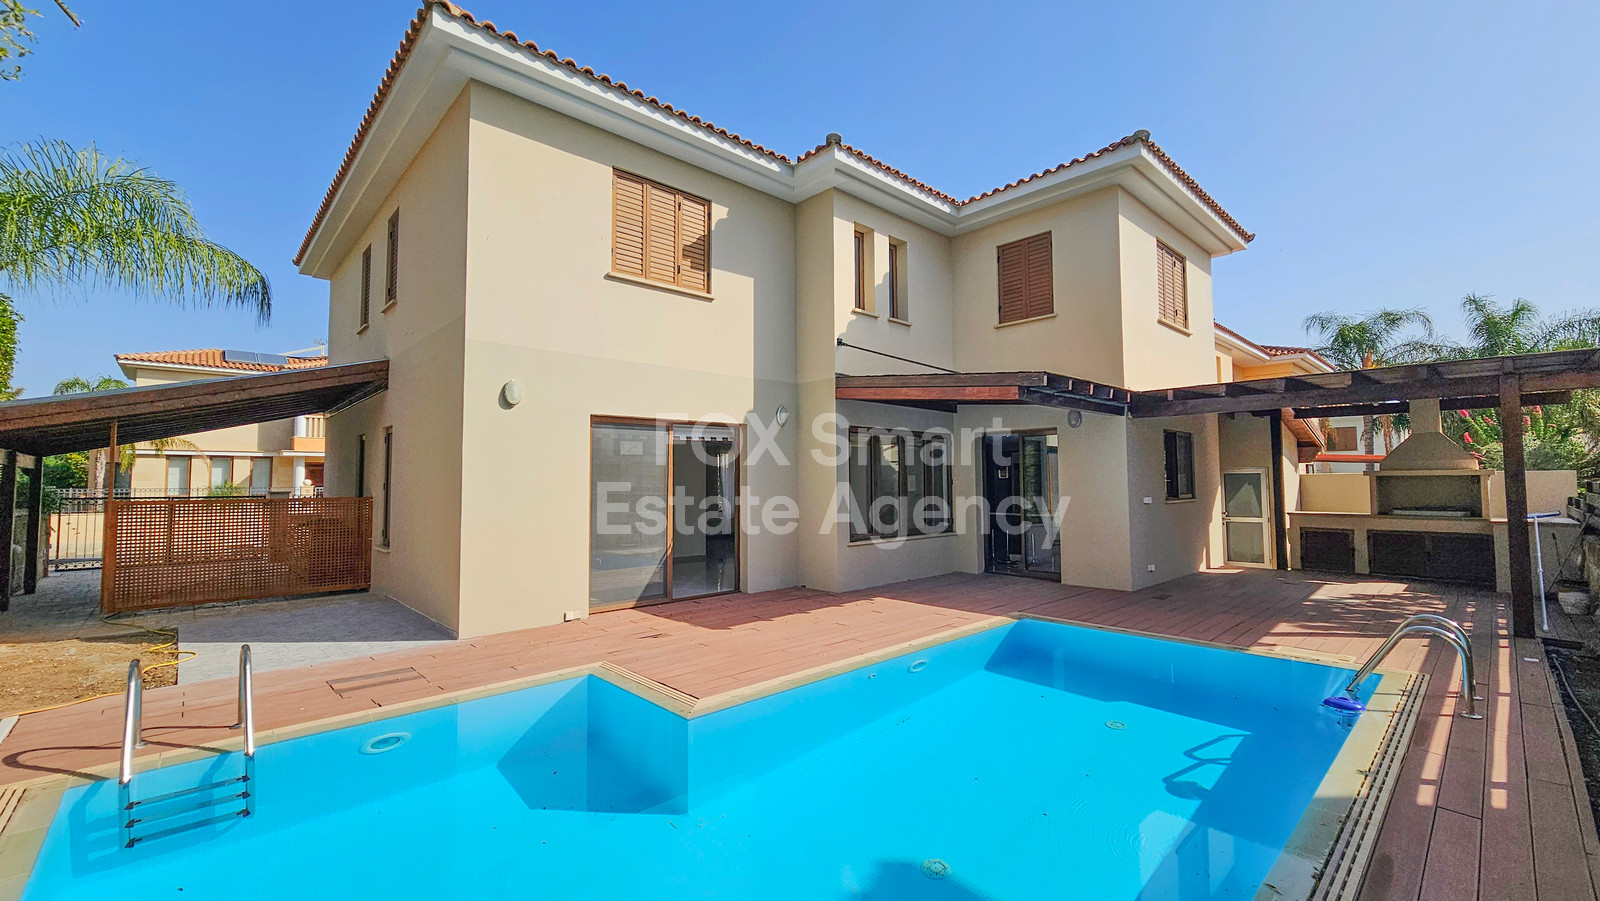 House, For Sale, Nicosia, Strovolos, Agios Vasileios  4 Bedr.....